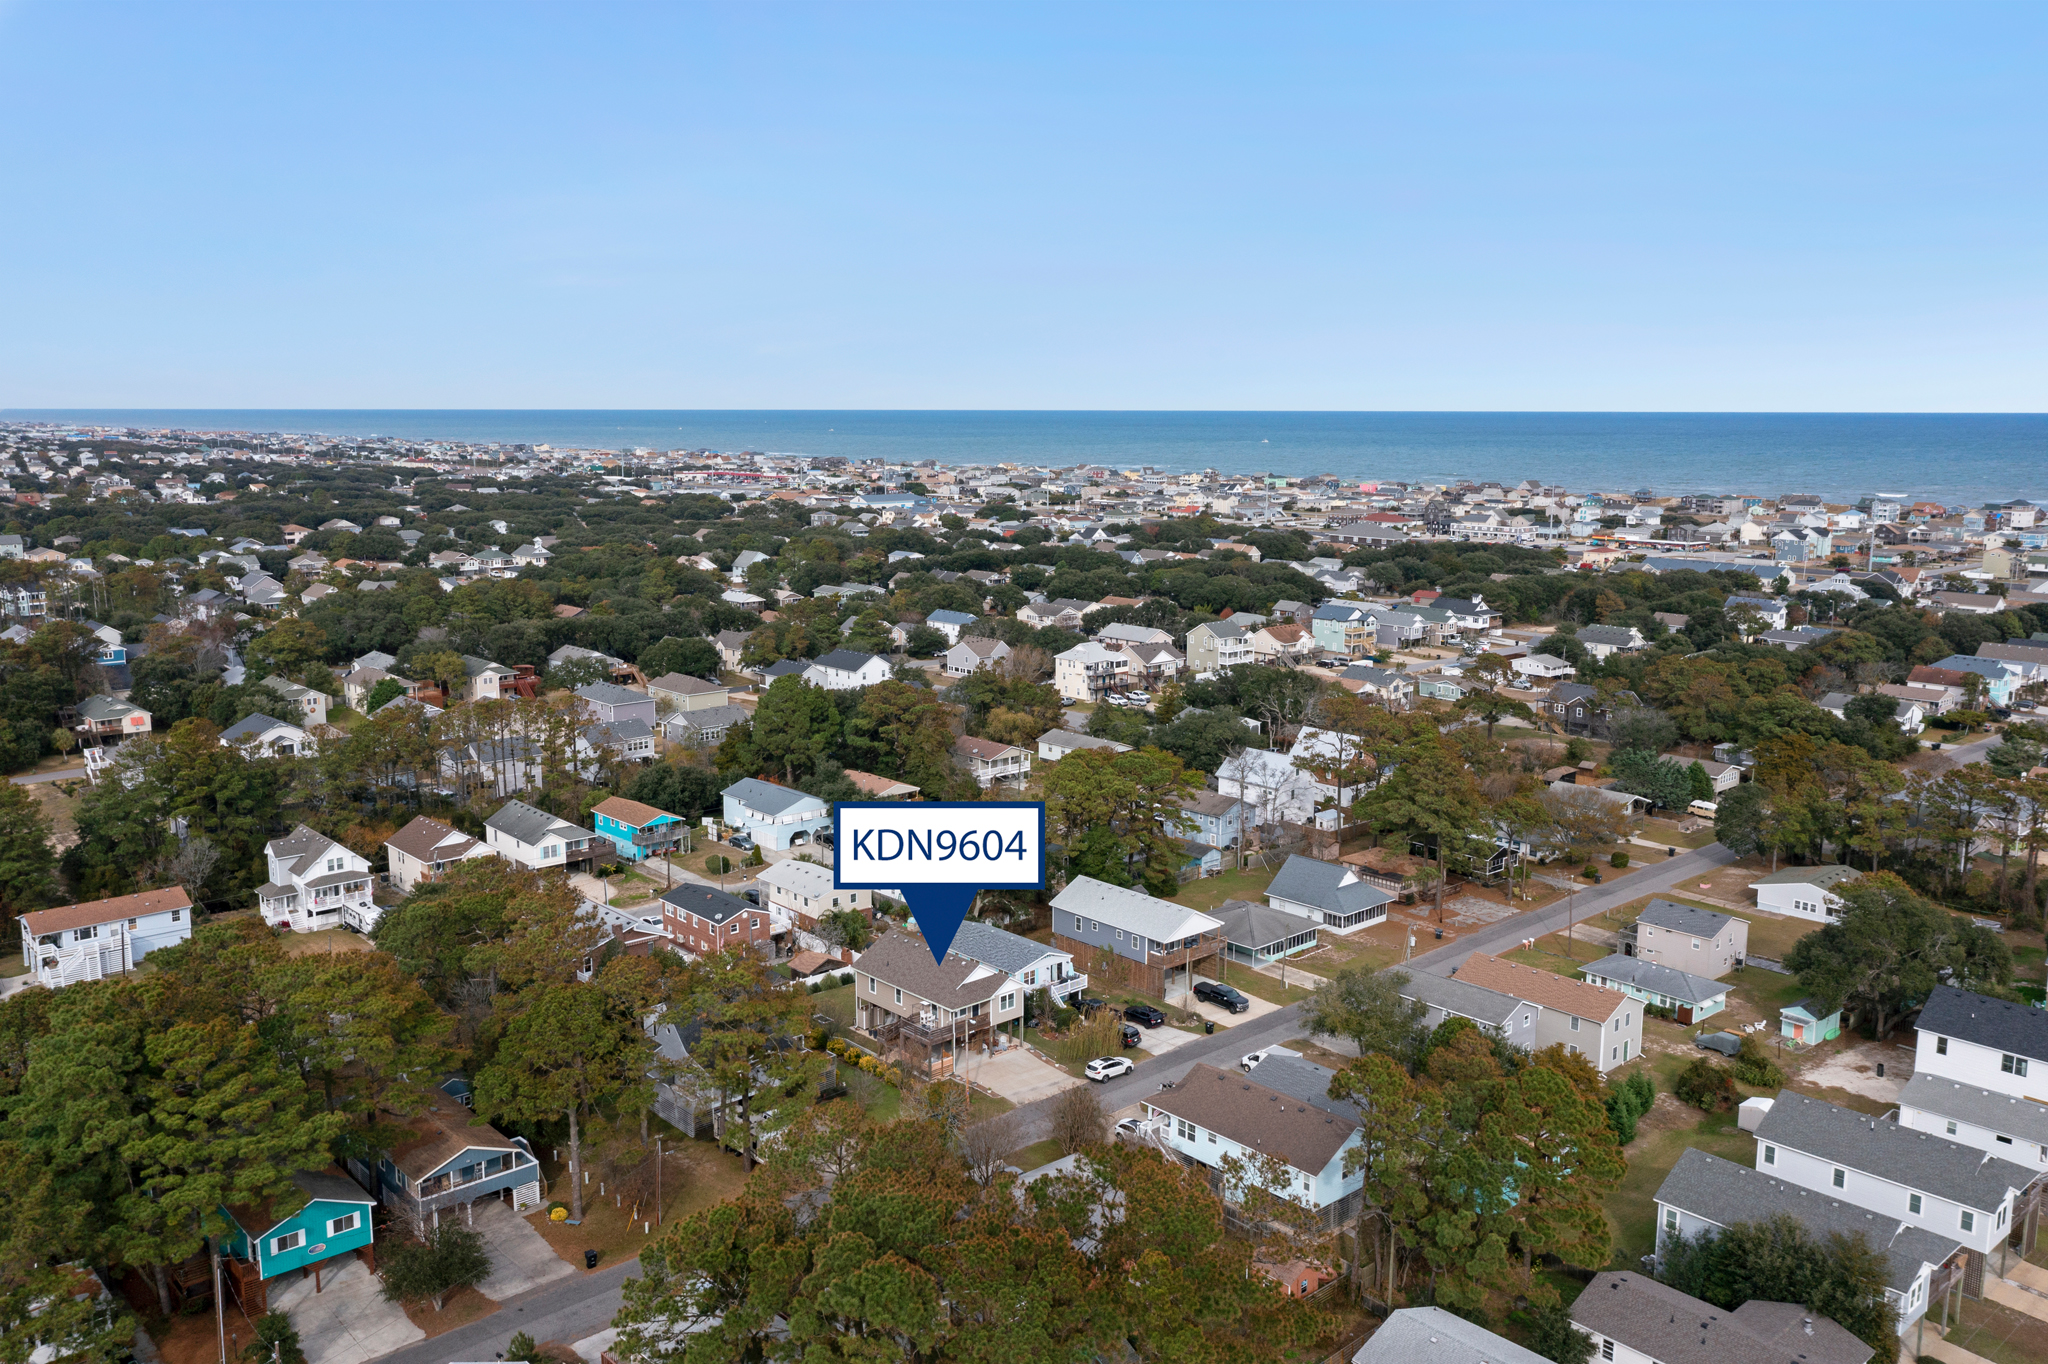 KDN9604: Beach Gnome | Aerial View Facing East